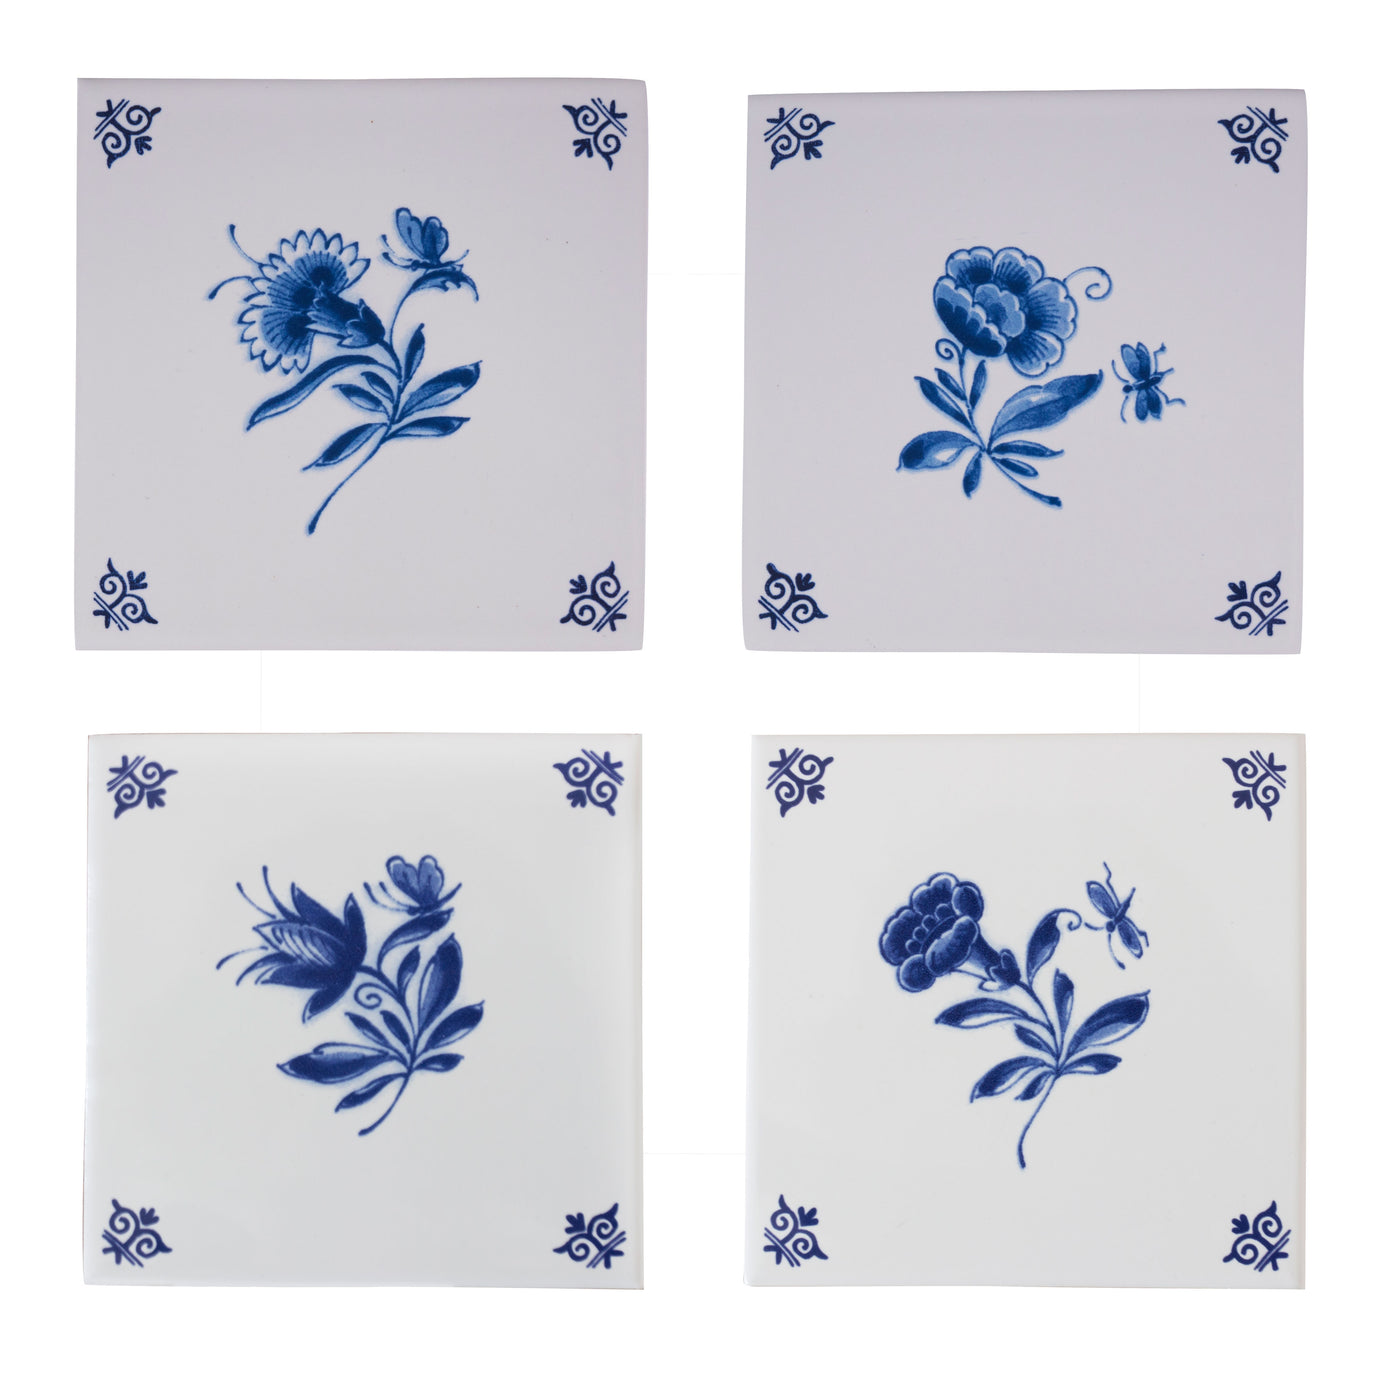 Tile Flower Set Delft Blue by Royal Delft